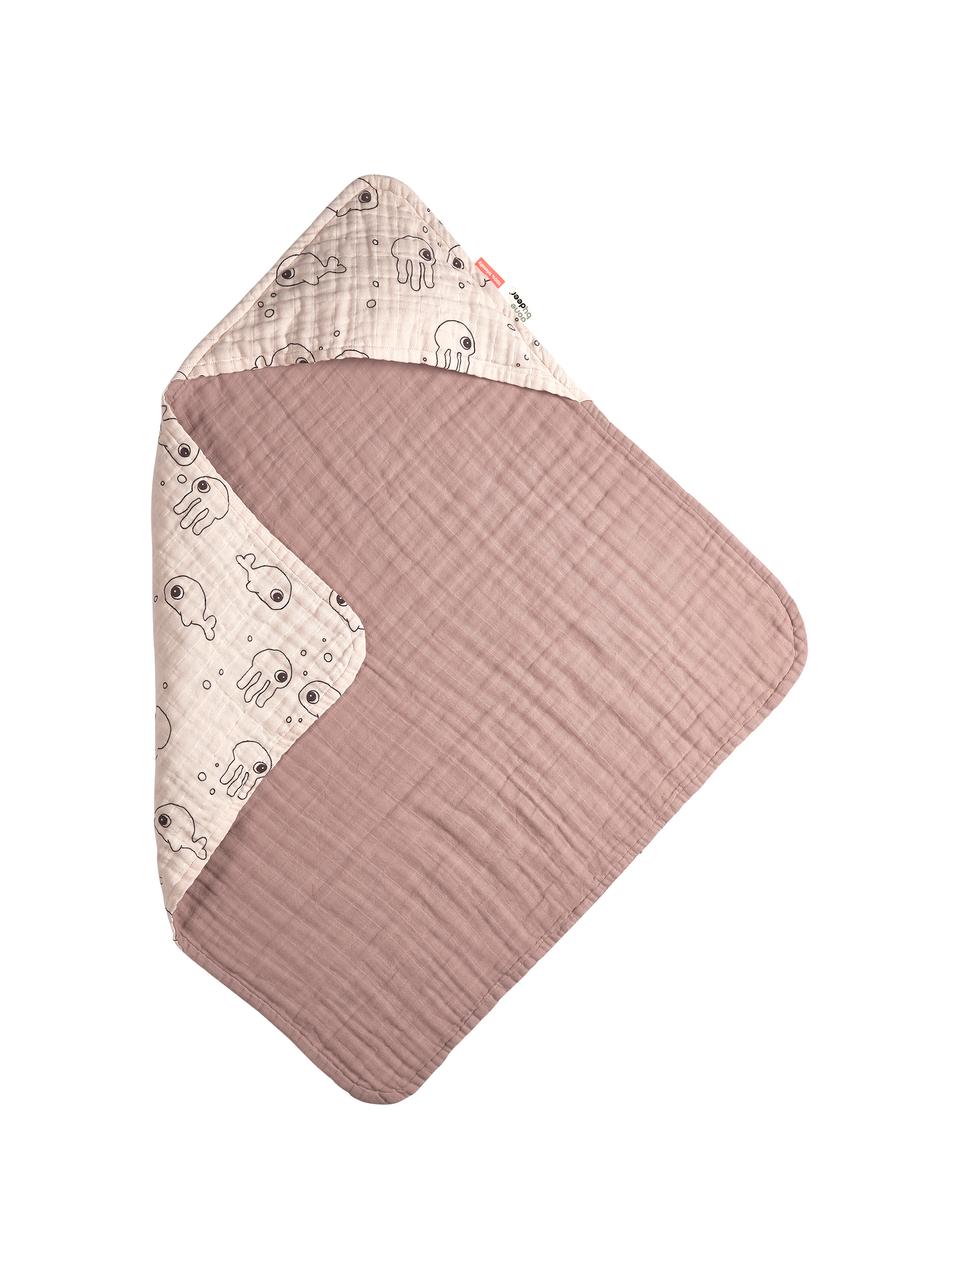 Ręcznik dla dzieci Sea Friends, 100% bawełna, certyfikat Oeko-Tex, Blady różowy, S 70 x D 70 cm